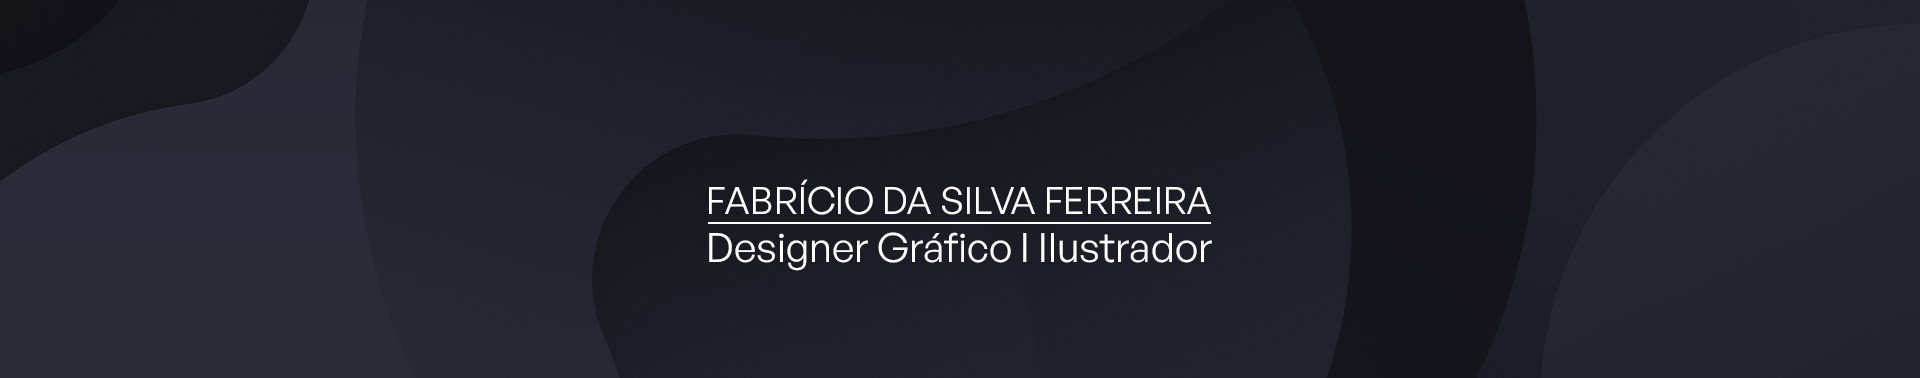 Bannière de profil de Fabrício da Silva Ferreira